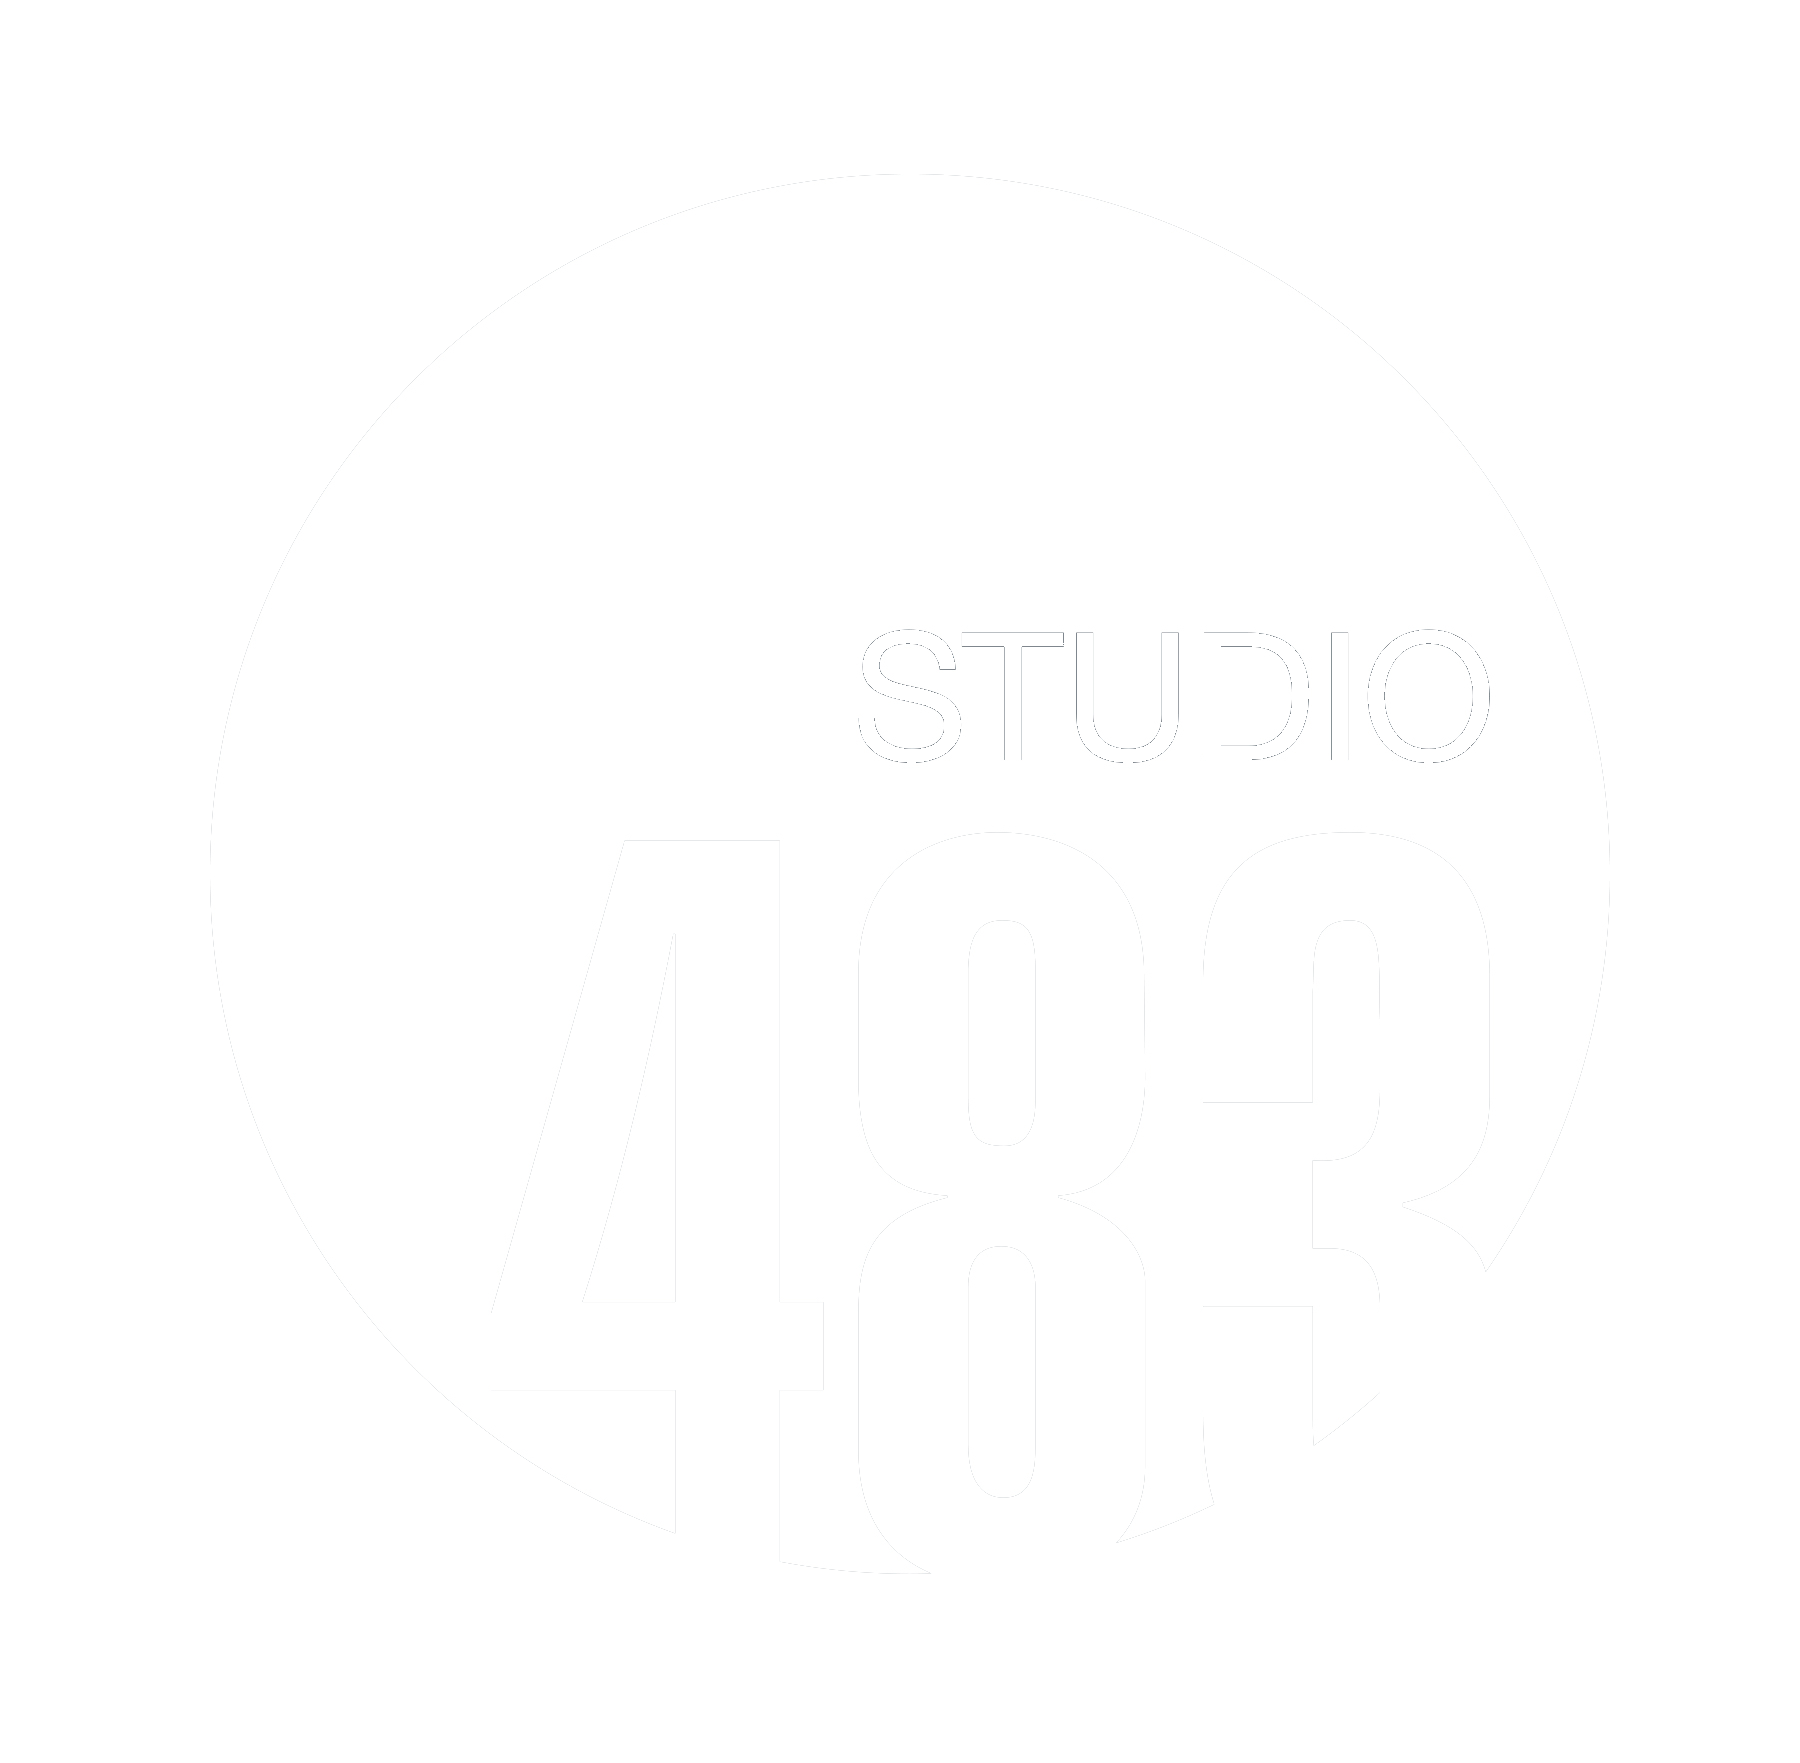 Studio483